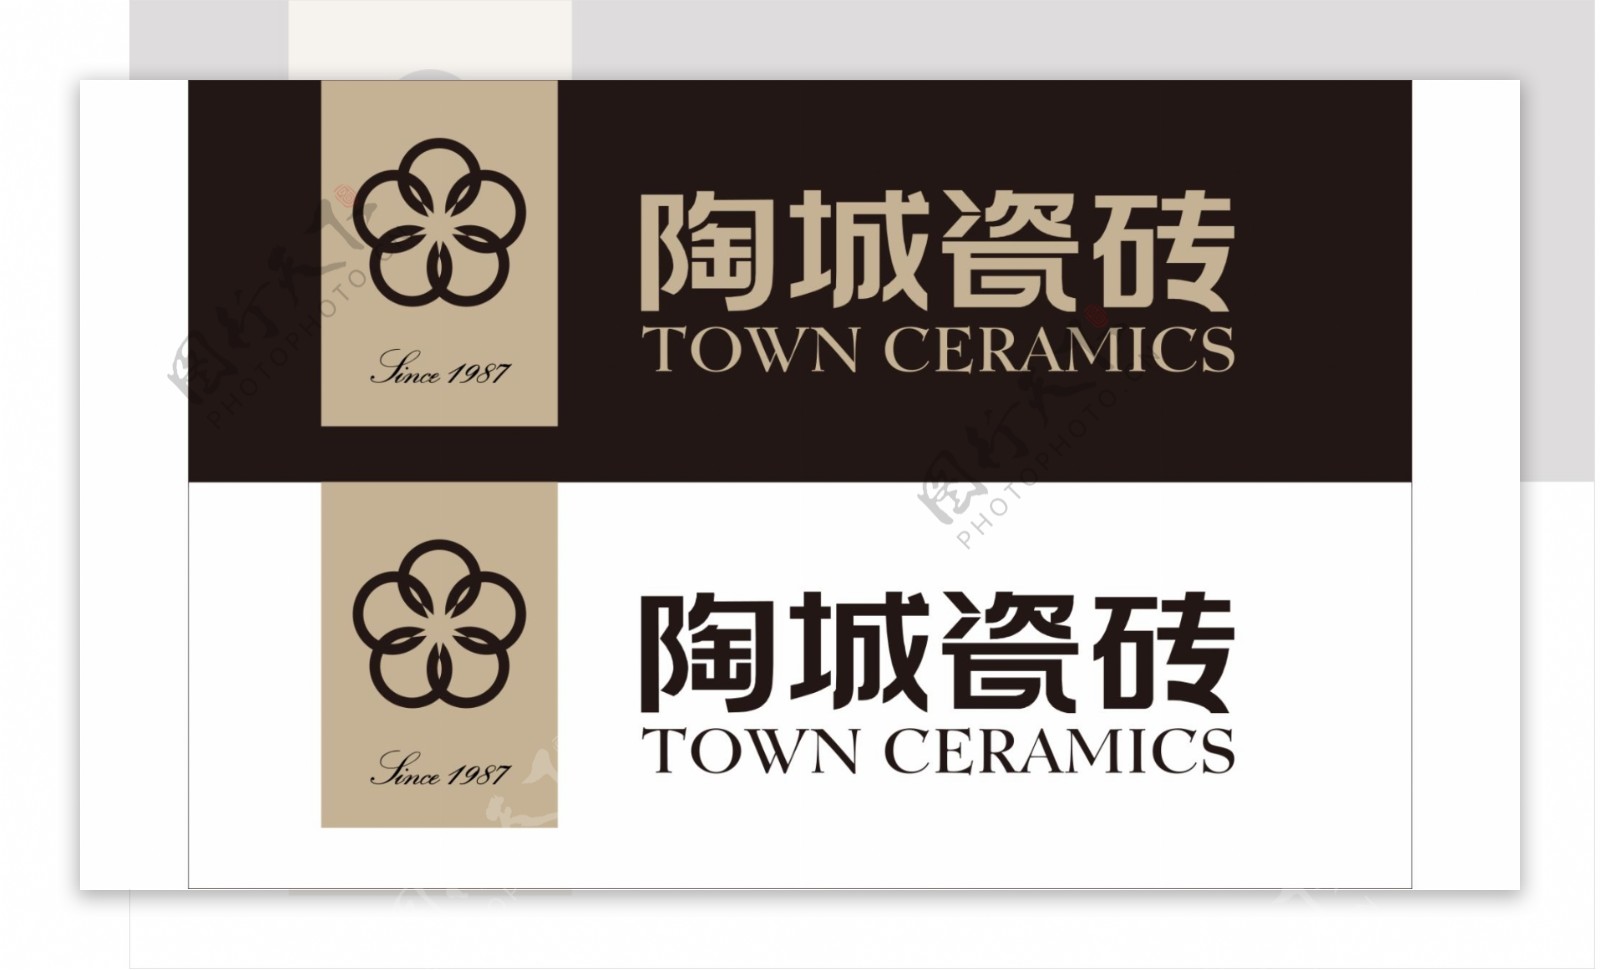 陶城瓷砖新标志logo图片